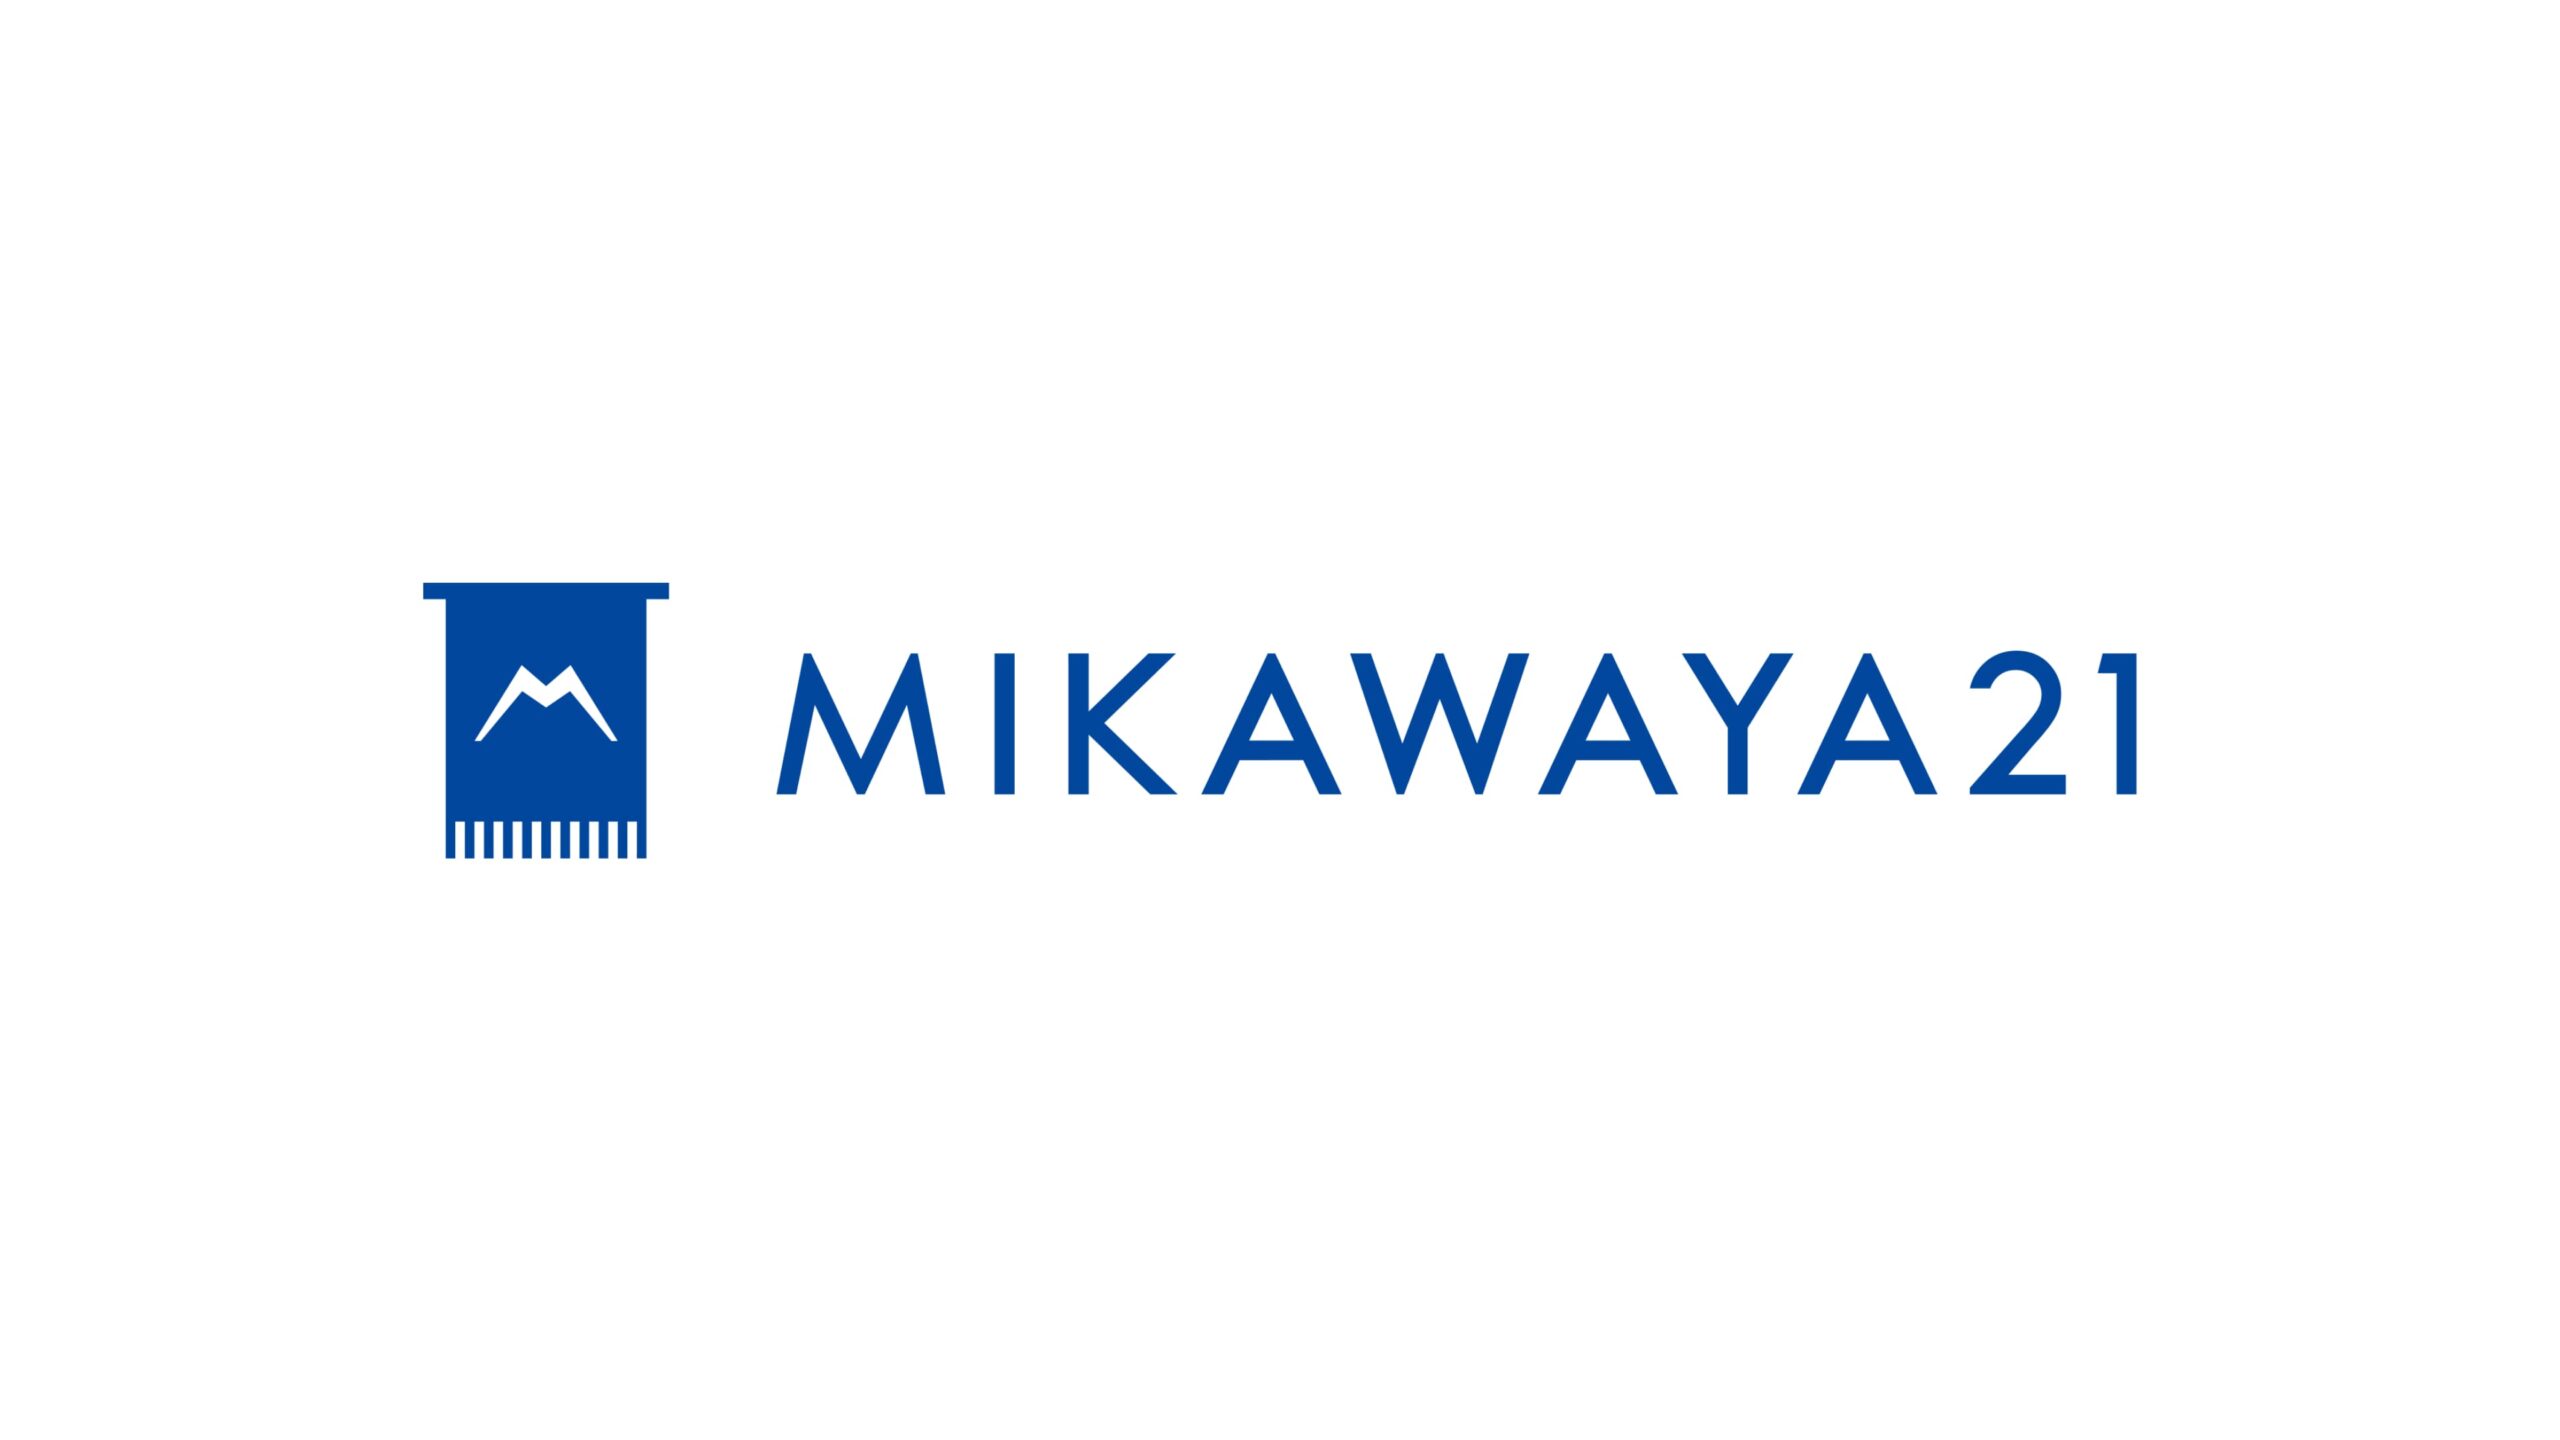 「まごころサポート」を提供するMIKAWAYA21株式会社が株式会社フューチャーベンチャーキャピタルより資金調達